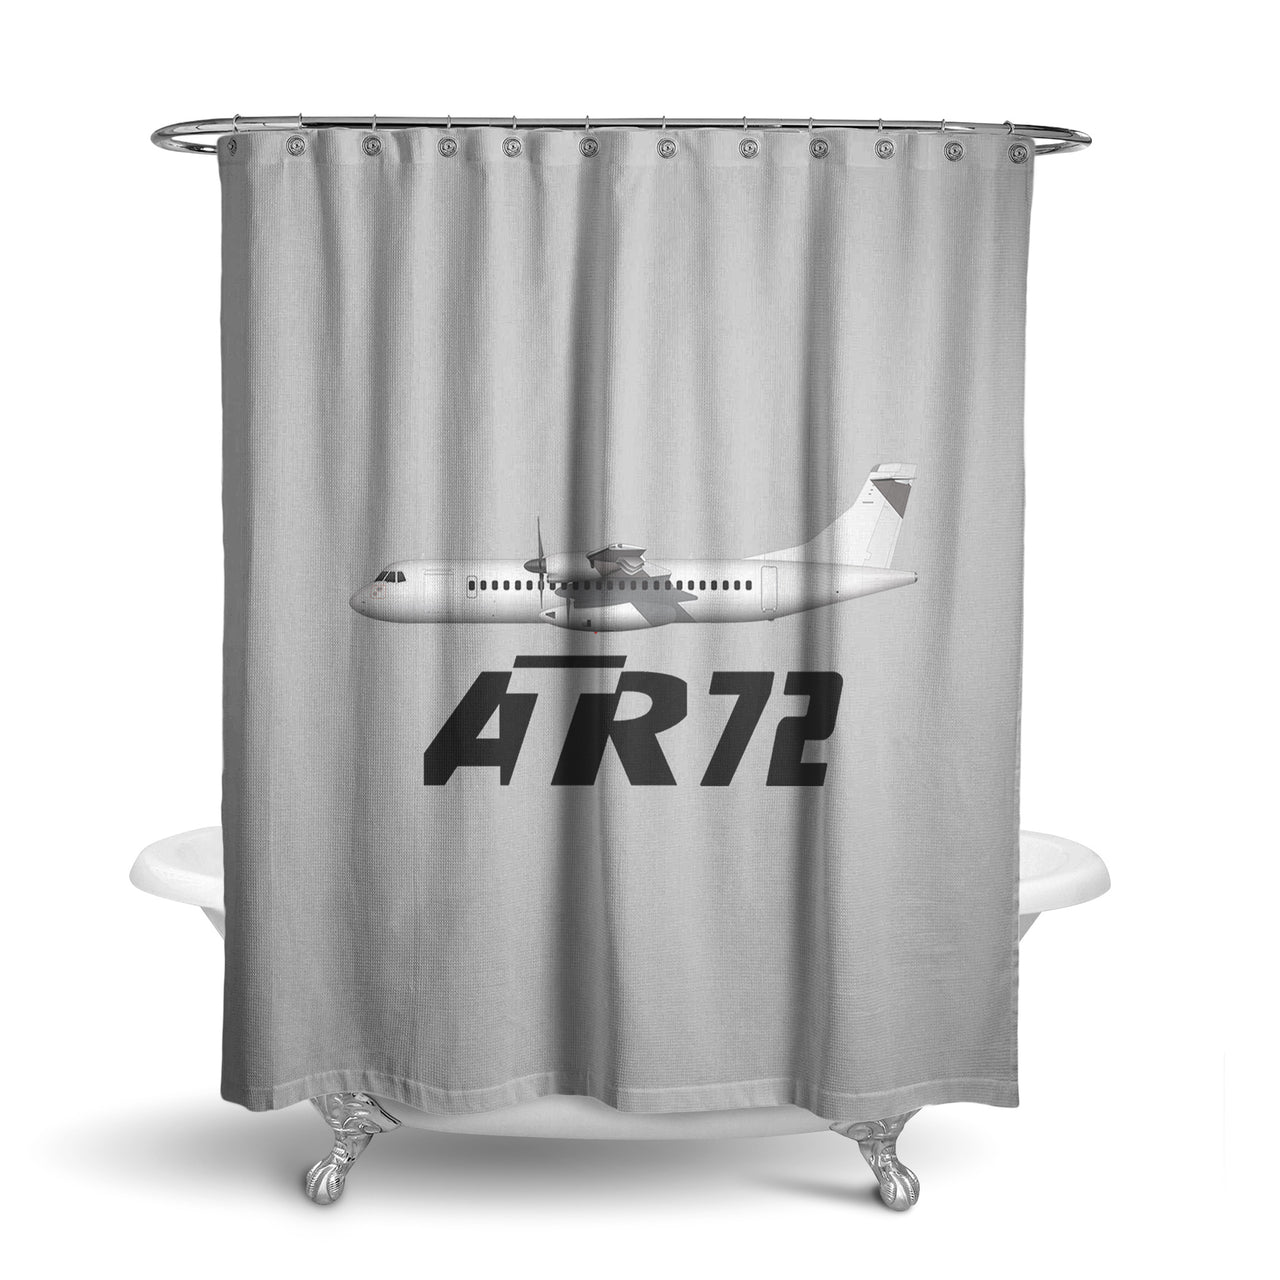 The ATR72 Designed Shower Curtains